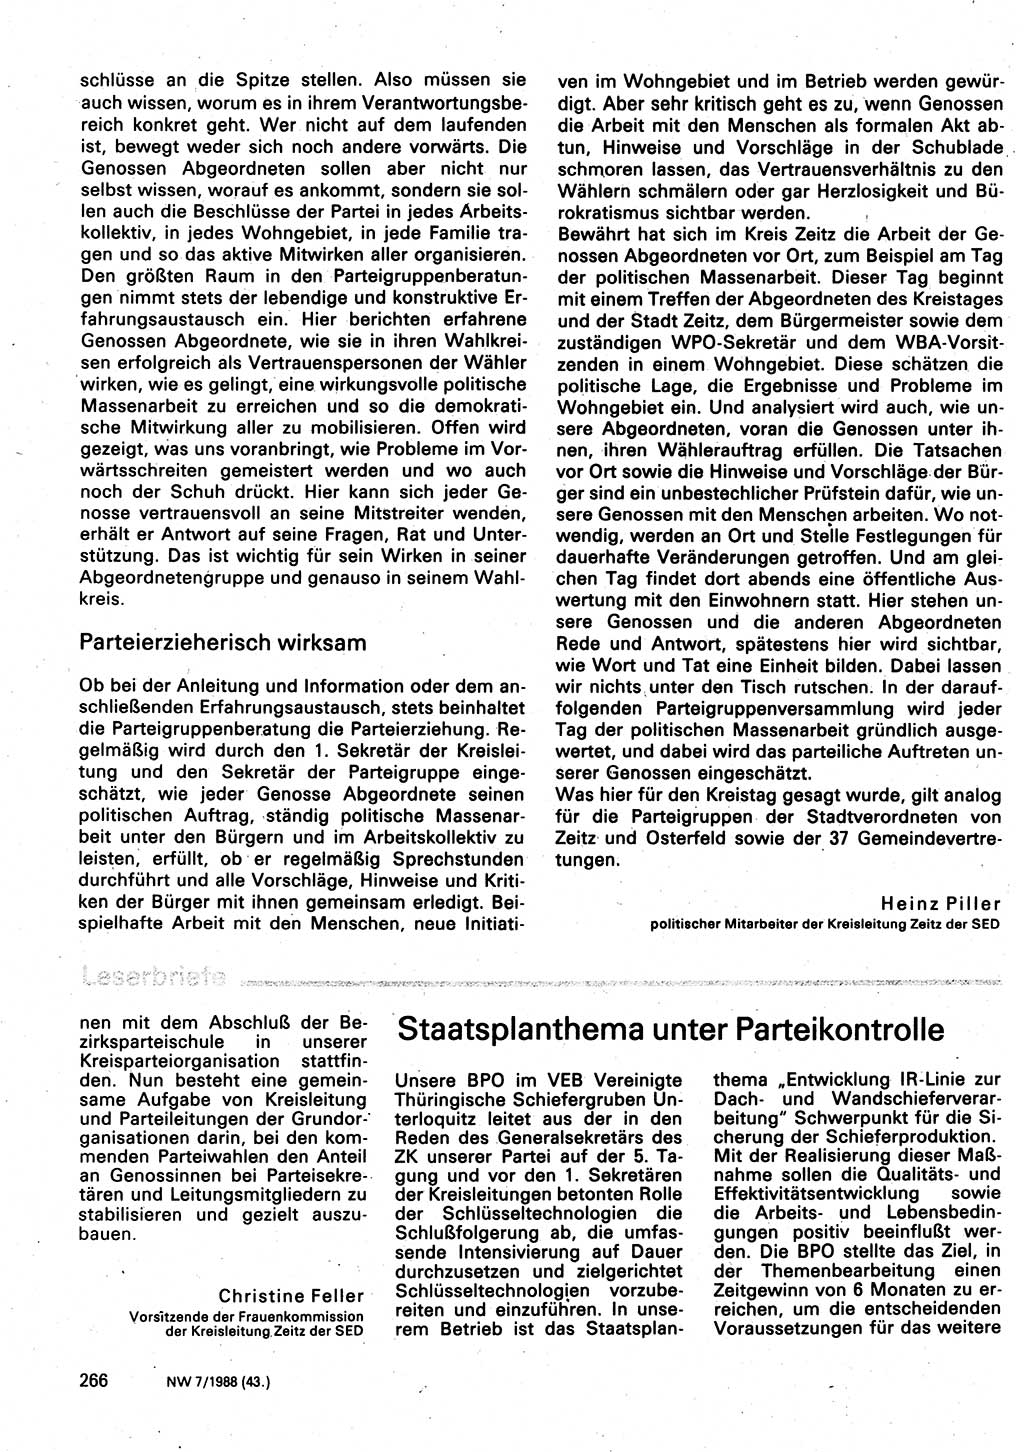 Neuer Weg (NW), Organ des Zentralkomitees (ZK) der SED (Sozialistische Einheitspartei Deutschlands) für Fragen des Parteilebens, 43. Jahrgang [Deutsche Demokratische Republik (DDR)] 1988, Seite 266 (NW ZK SED DDR 1988, S. 266)